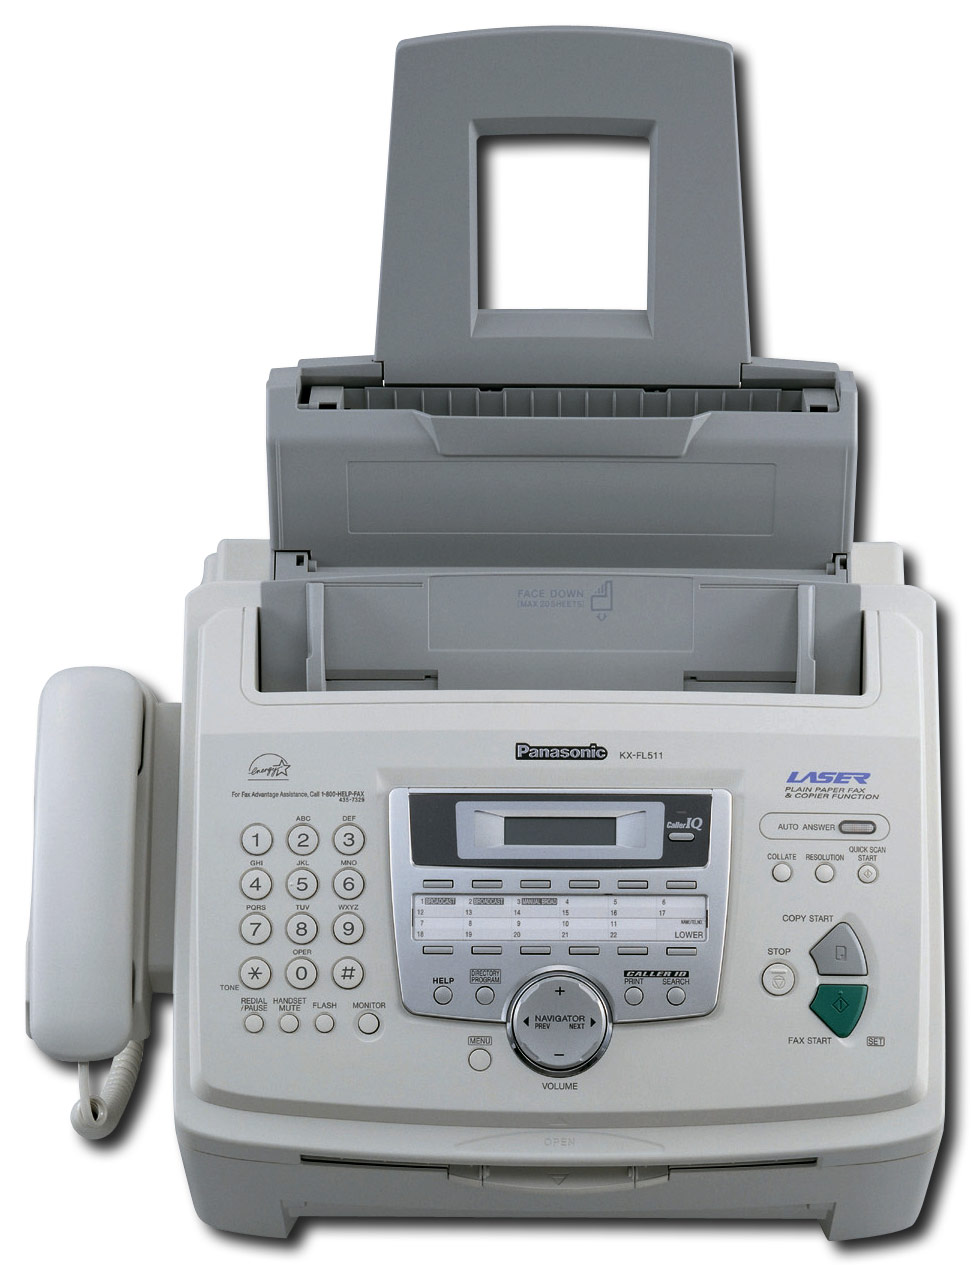  Panasonic - Plain Paper Laser Fax/Copier - Gray